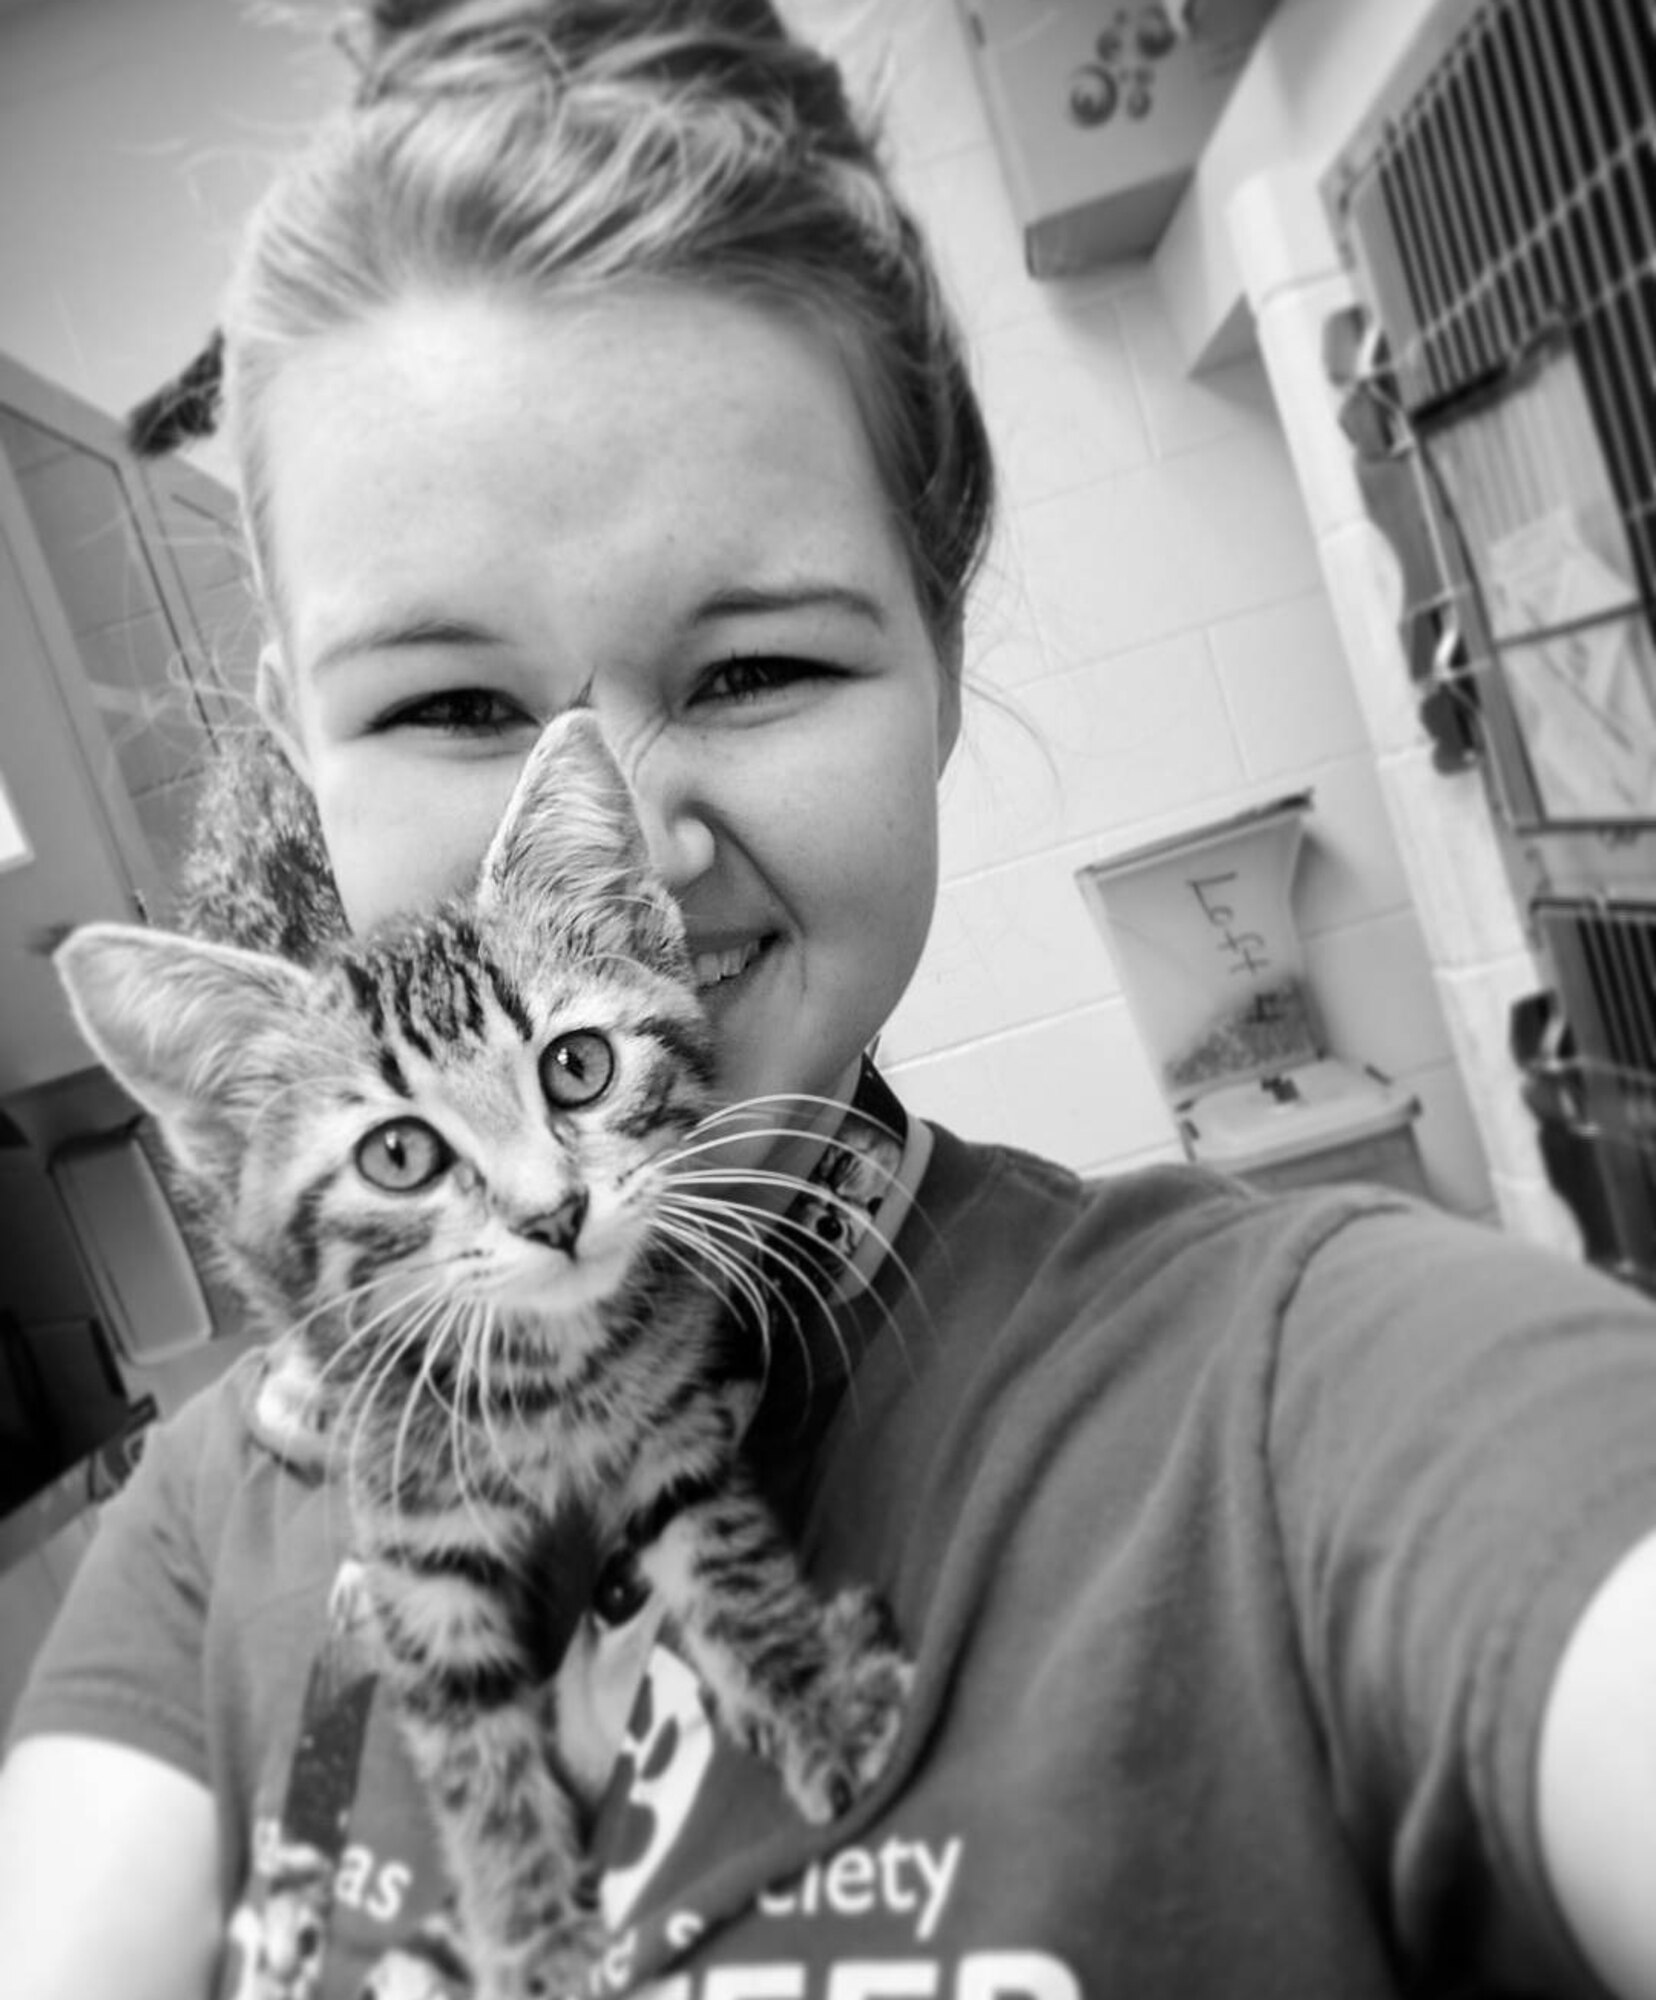 A selfie with a kitten